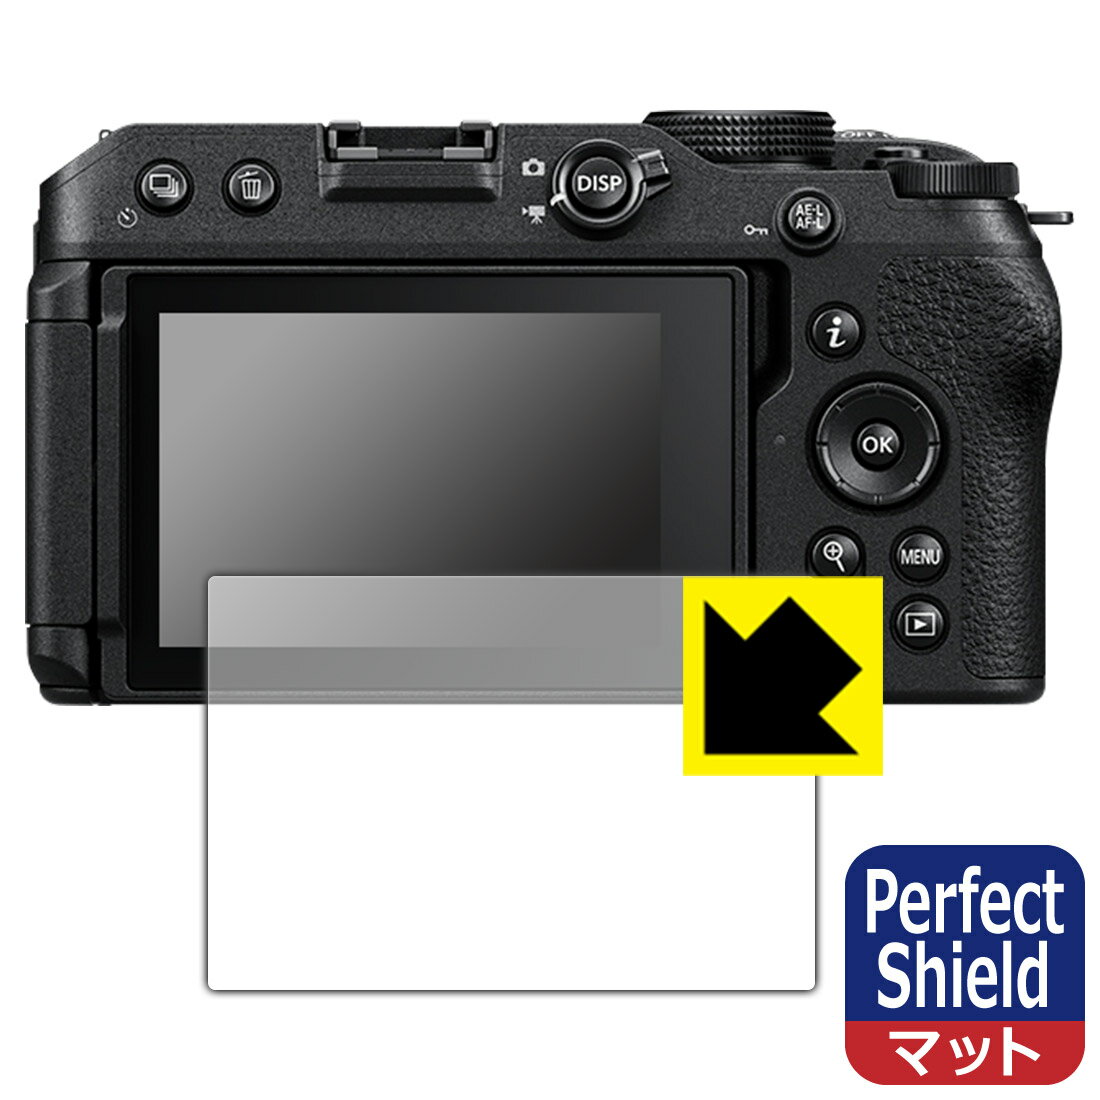 ●対応機種 : Nikon ミラーレスカメラ Z 30専用の商品です。●製品内容 : 画面用フィルム1枚・クリーニングワイプ1個●「Perfect Shield」は画面の反射を抑え、指のすべりもなめらかな指紋や皮脂汚れがつきにくい『アンチグレアタイプ(非光沢)の保護フィルム』●安心の国産素材を使用。日本国内の自社工場で製造し出荷しています。 ★貼り付け失敗交換サービス対象商品★【ポスト投函送料無料】商品は【ポスト投函発送 (追跡可能メール便)】で発送します。お急ぎ、配達日時を指定されたい方は以下のクーポンを同時購入ください。【お急ぎ便クーポン】　プラス110円(税込)で速達扱いでの発送。お届けはポストへの投函となります。【配達日時指定クーポン】　プラス550円(税込)で配達日時を指定し、宅配便で発送させていただきます。【お急ぎ便クーポン】はこちらをクリック【配達日時指定クーポン】はこちらをクリック 　 表面に微細な凹凸を作ることにより、外光を乱反射させギラツキを抑える「アンチグレア加工」がされております。 屋外での太陽光の映り込み、屋内でも蛍光灯などの映り込みが気になるシーンが多い方におすすめです。 また、指紋がついた場合でも目立ちにくいという特長があります。 指滑りはさらさらな使用感でストレスのない操作・入力が可能です。 ハードコート加工がされており、キズや擦れに強くなっています。簡単にキズがつかず長くご利用いただけます。 反射防止のアンチグレア加工で指紋が目立ちにくい上、表面は防汚コーティングがされており、皮脂や汚れがつきにくく、また、落ちやすくなっています。 接着面は気泡の入りにくい特殊な自己吸着タイプです。素材に柔軟性があり、貼り付け作業も簡単にできます。また、はがすときにガラス製フィルムのように割れてしまうことはありません。 貼り直しが何度でもできるので、正しい位置へ貼り付けられるまでやり直すことができます。 最高級グレードの国産素材を日本国内の弊社工場で加工している完全な Made in Japan です。安心の品質をお届けします。 使用上の注意 ●本製品は機器の画面をキズなどから保護するフィルムです。他の目的にはご使用にならないでください。 ●本製品は液晶保護および機器本体を完全に保護することを保証するものではありません。機器の破損、損傷、故障、その他損害につきましては一切の責任を負いかねます。 ●製品の性質上、画面操作の反応が変化したり、表示等が変化して見える場合がございます。 ●貼り付け作業時の失敗(位置ズレ、汚れ、ゆがみ、折れ、気泡など)および取り外し作業時の破損、損傷などについては、一切の責任を負いかねます。 ●水に濡れた状態でのご使用は吸着力の低下などにより、保護フィルムがはがれてしまう場合がございます。防水対応の機器でご使用の場合はご注意ください。 ●アルコール類やその他薬剤を本製品に付着させないでください。表面のコーティングや吸着面が変質するおそれがあります。 ●品質向上のため、仕様などを予告なく変更する場合がございますので、予めご了承ください。